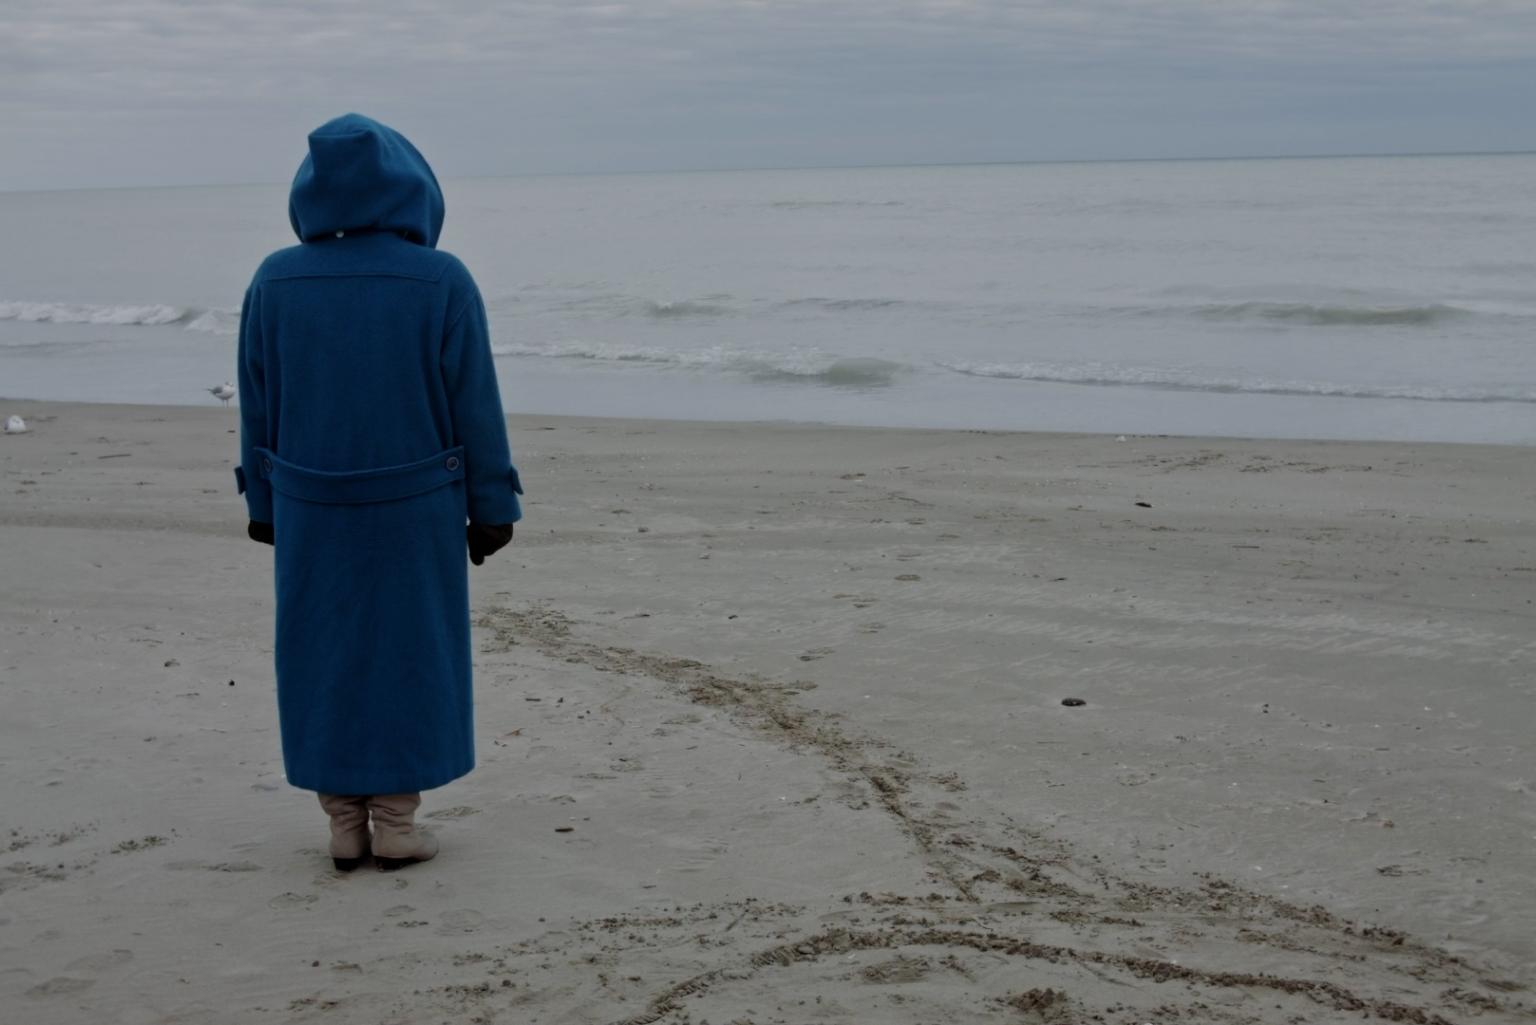 Am Strand, vor dem flachen, ruhigen Meer, steht eine Person in beinahe bodenlangem blauen Regenmantel mit dem Rücken zur Kamera. Sie hat die riesige Kapuze hochgezogen und schaut zum Meer.